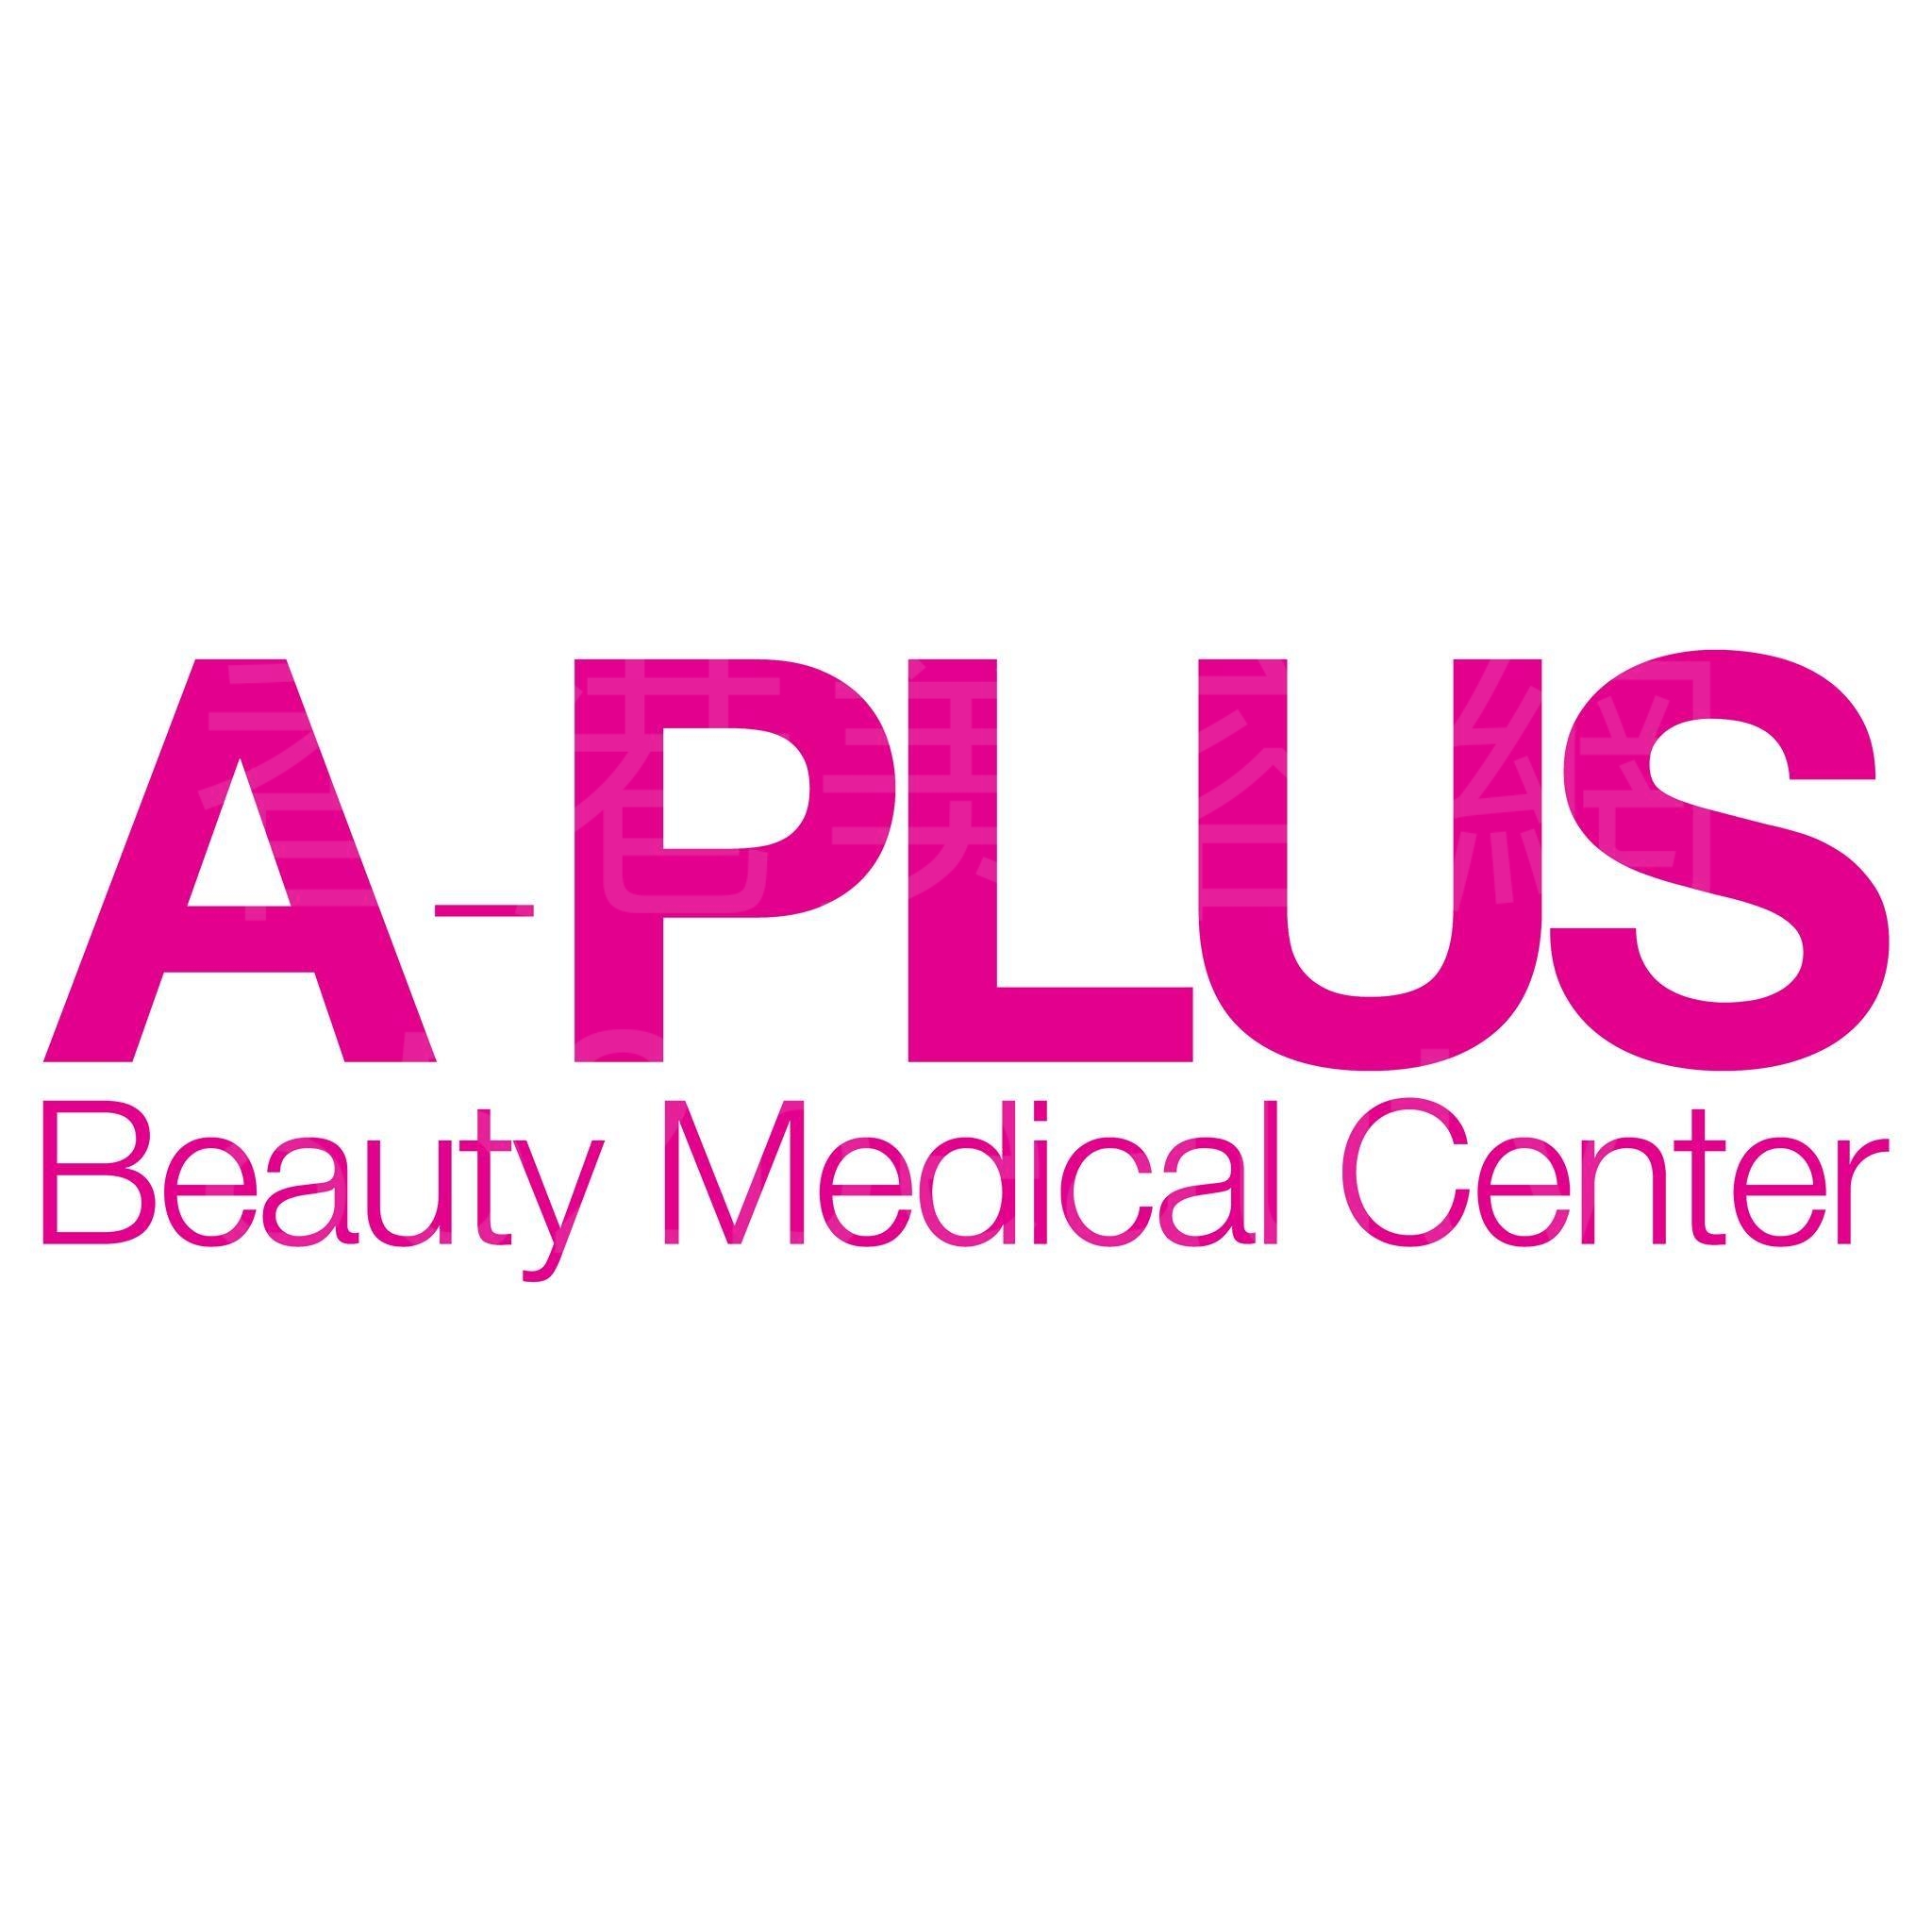 美容院 Beauty Salon: A-Plus Beauty Medical Center 醫學美容中心 (尖沙咀店)